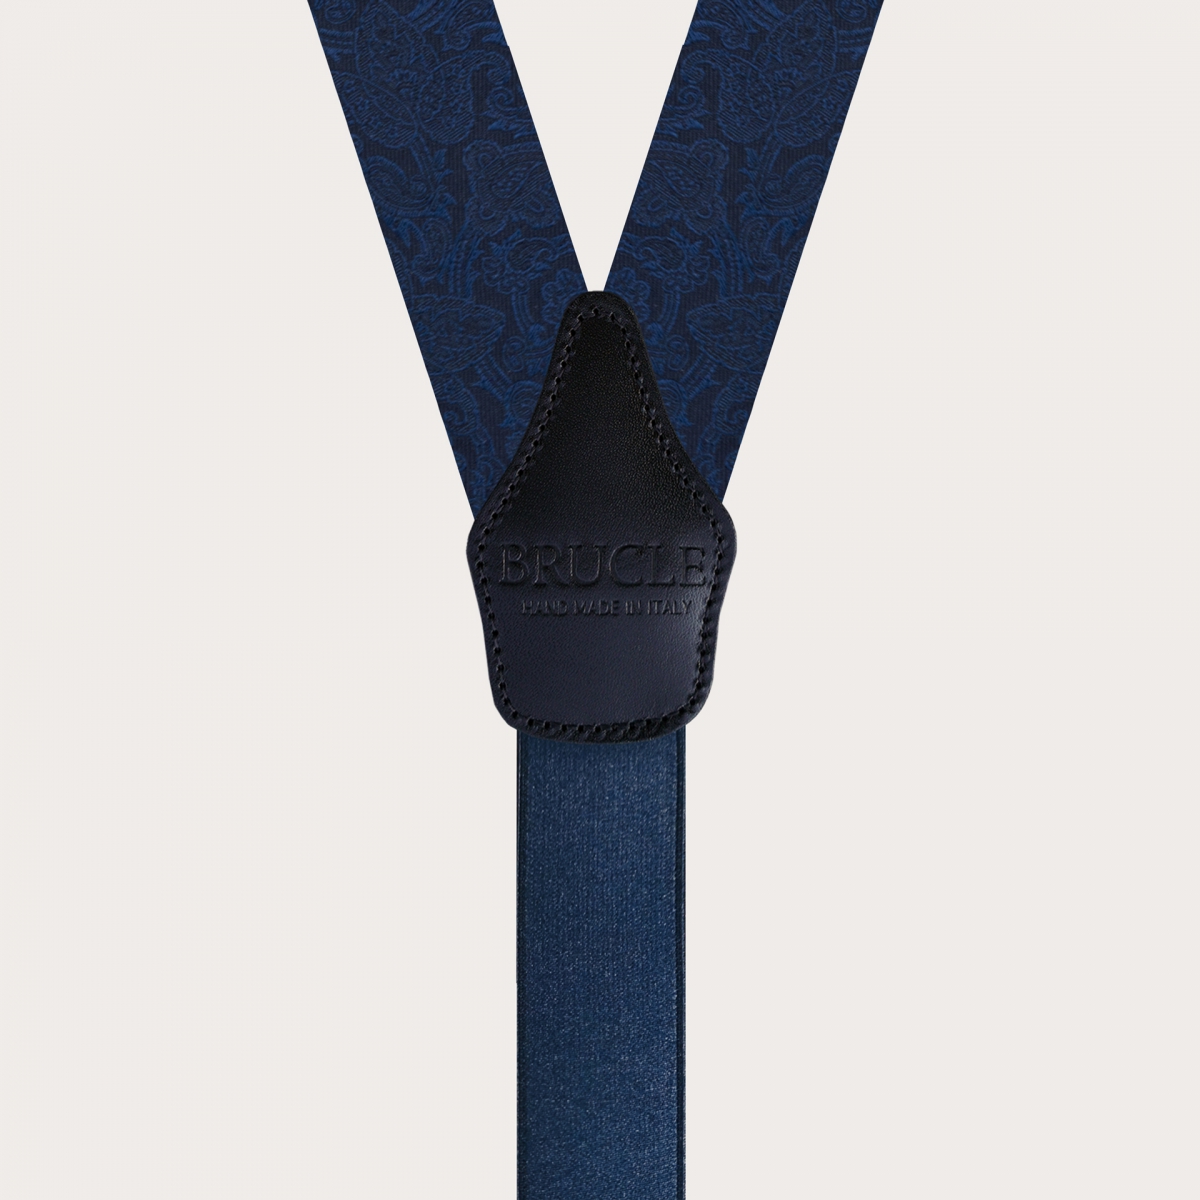 Tirantes en forma de Y en seda jacquard, azul con patrón paisley